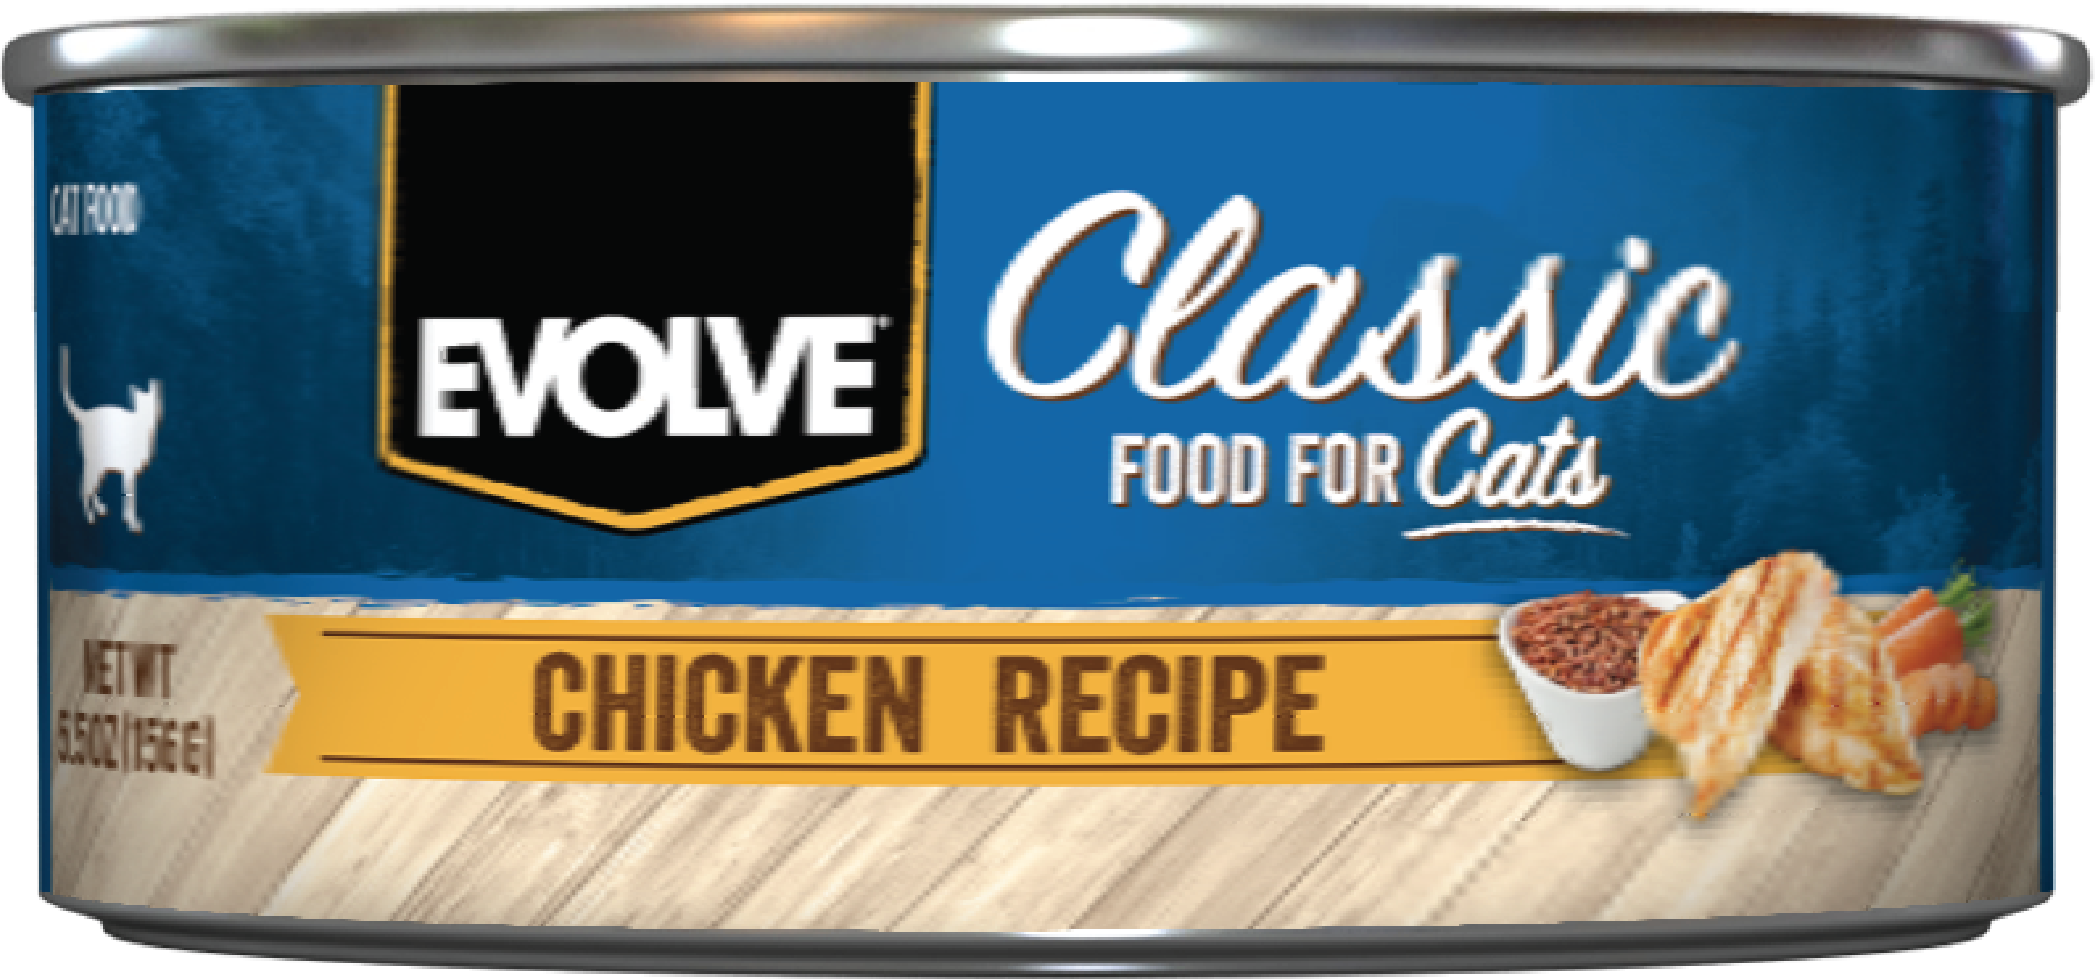 Evolve Classic Chicken Recipe